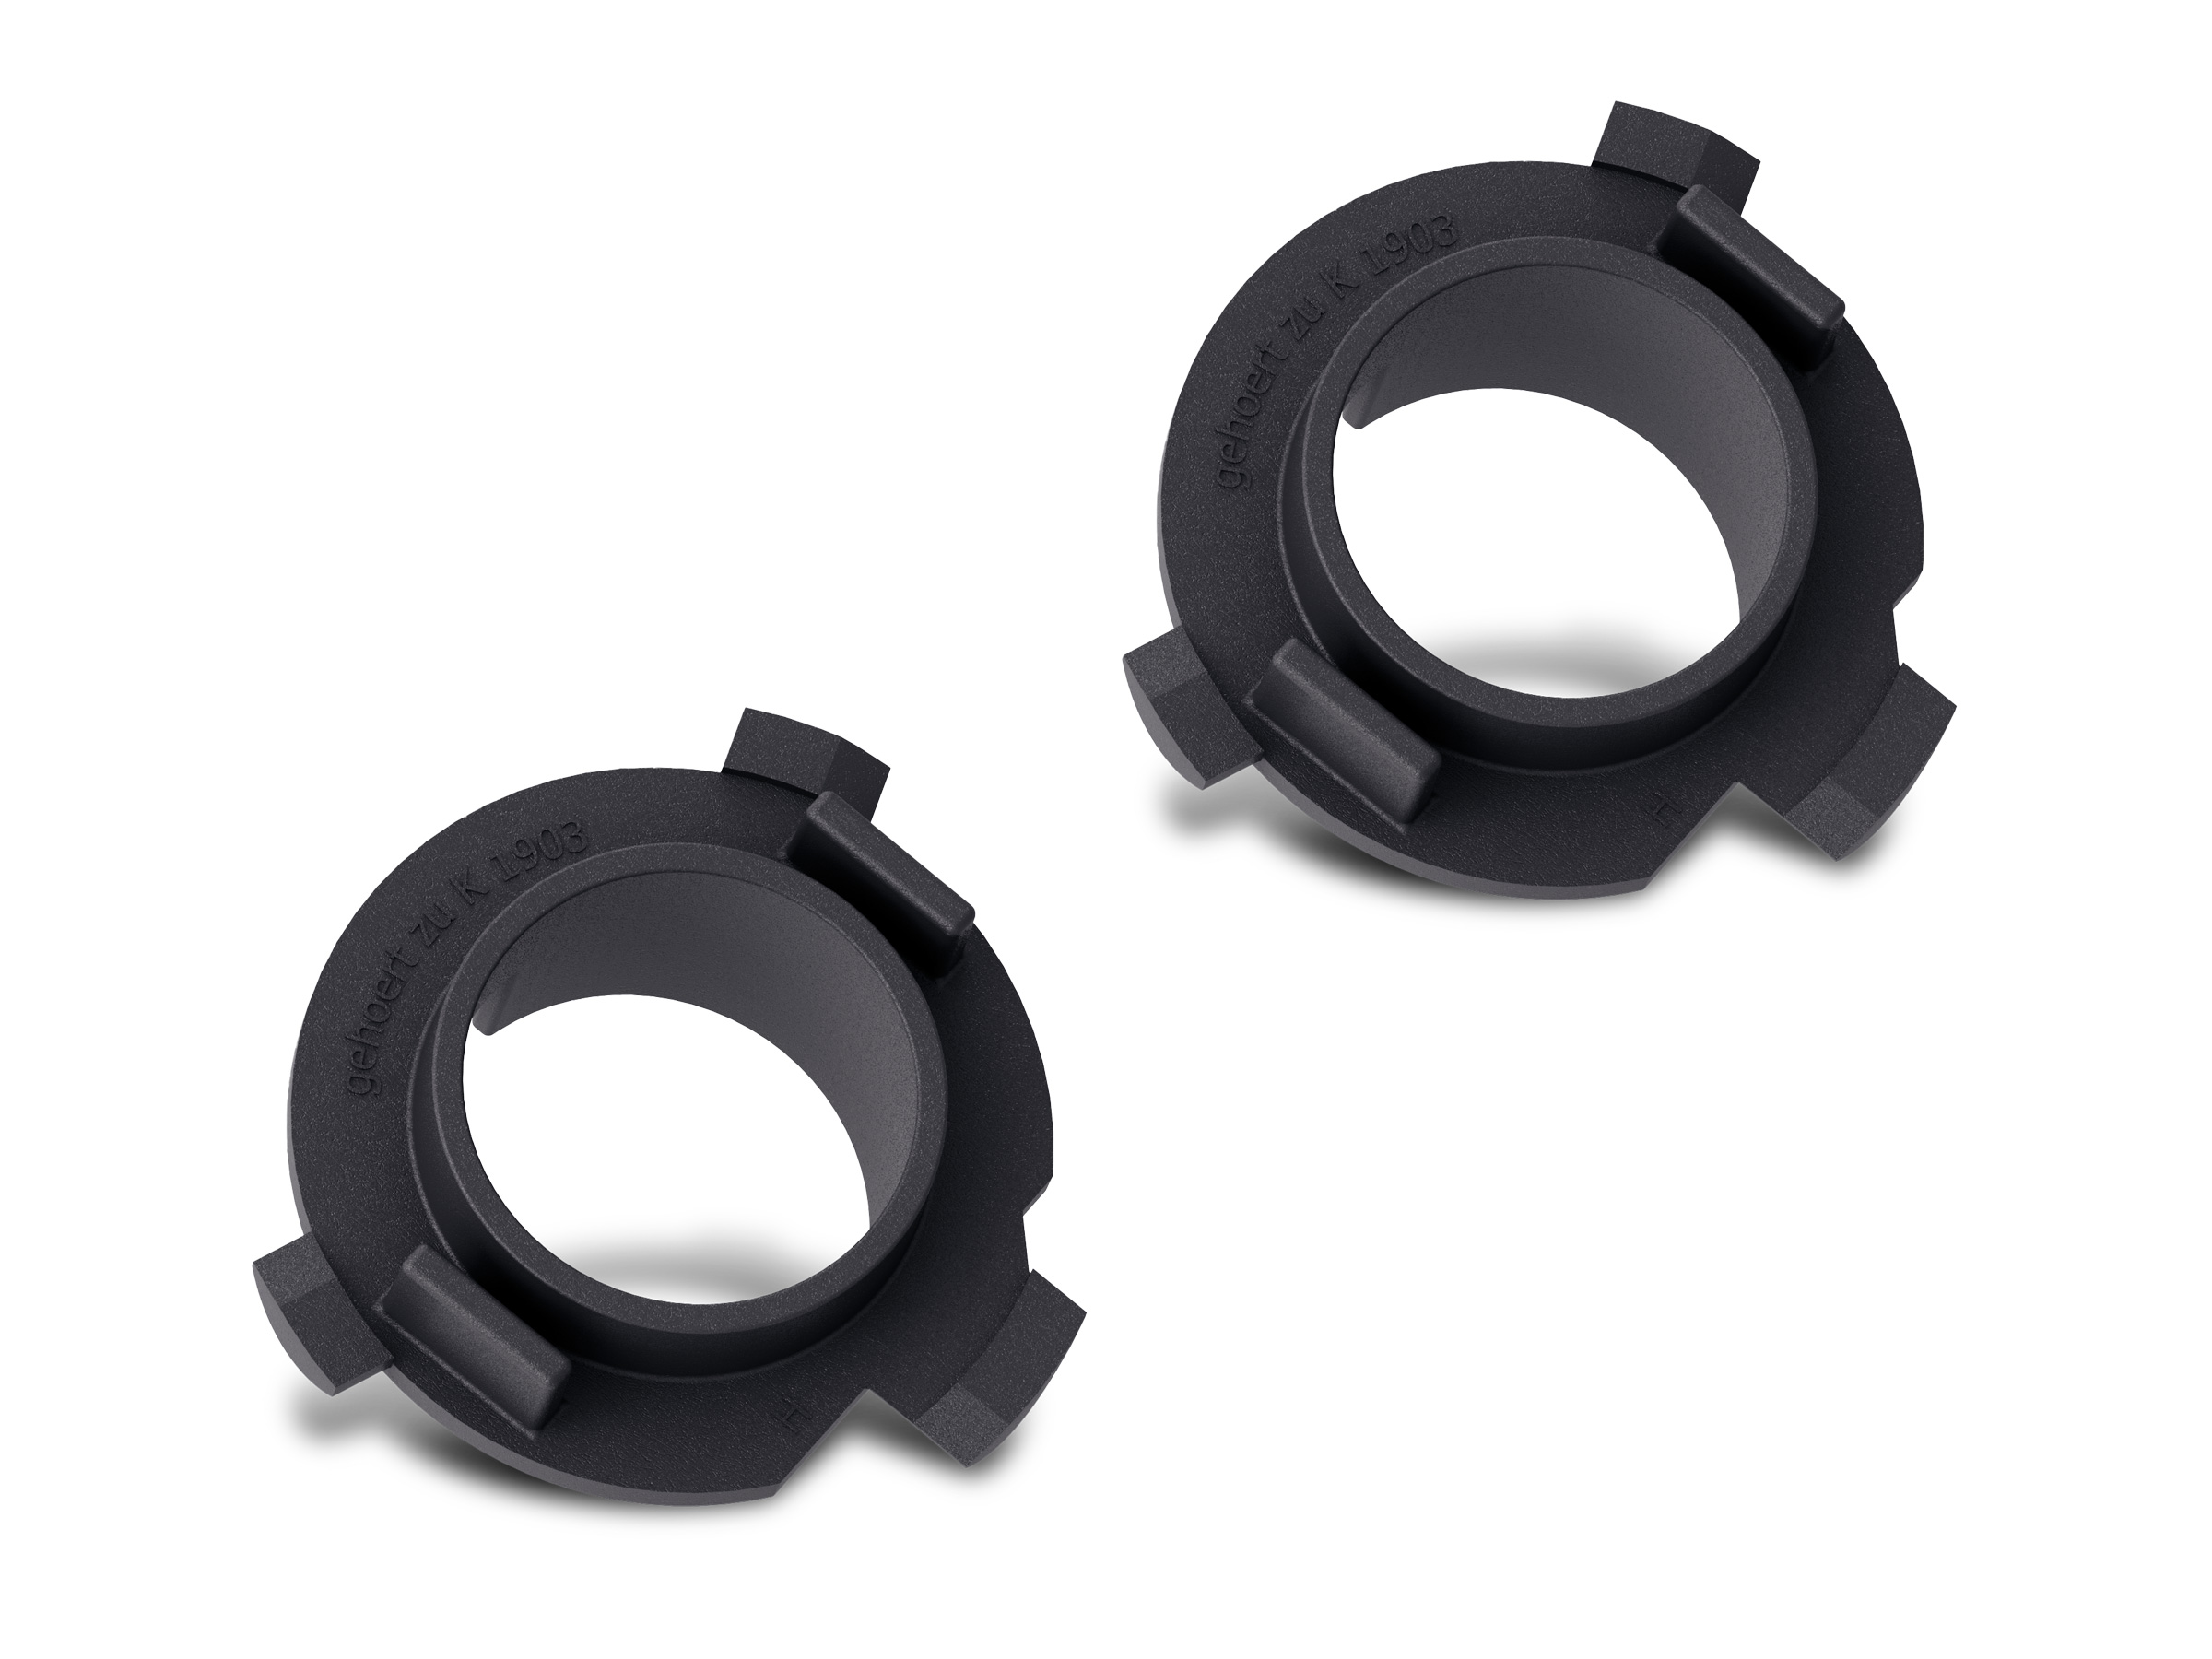 Philips Montagehalterung Adapter Ring Typ H für Ultinon Pro6000 H7